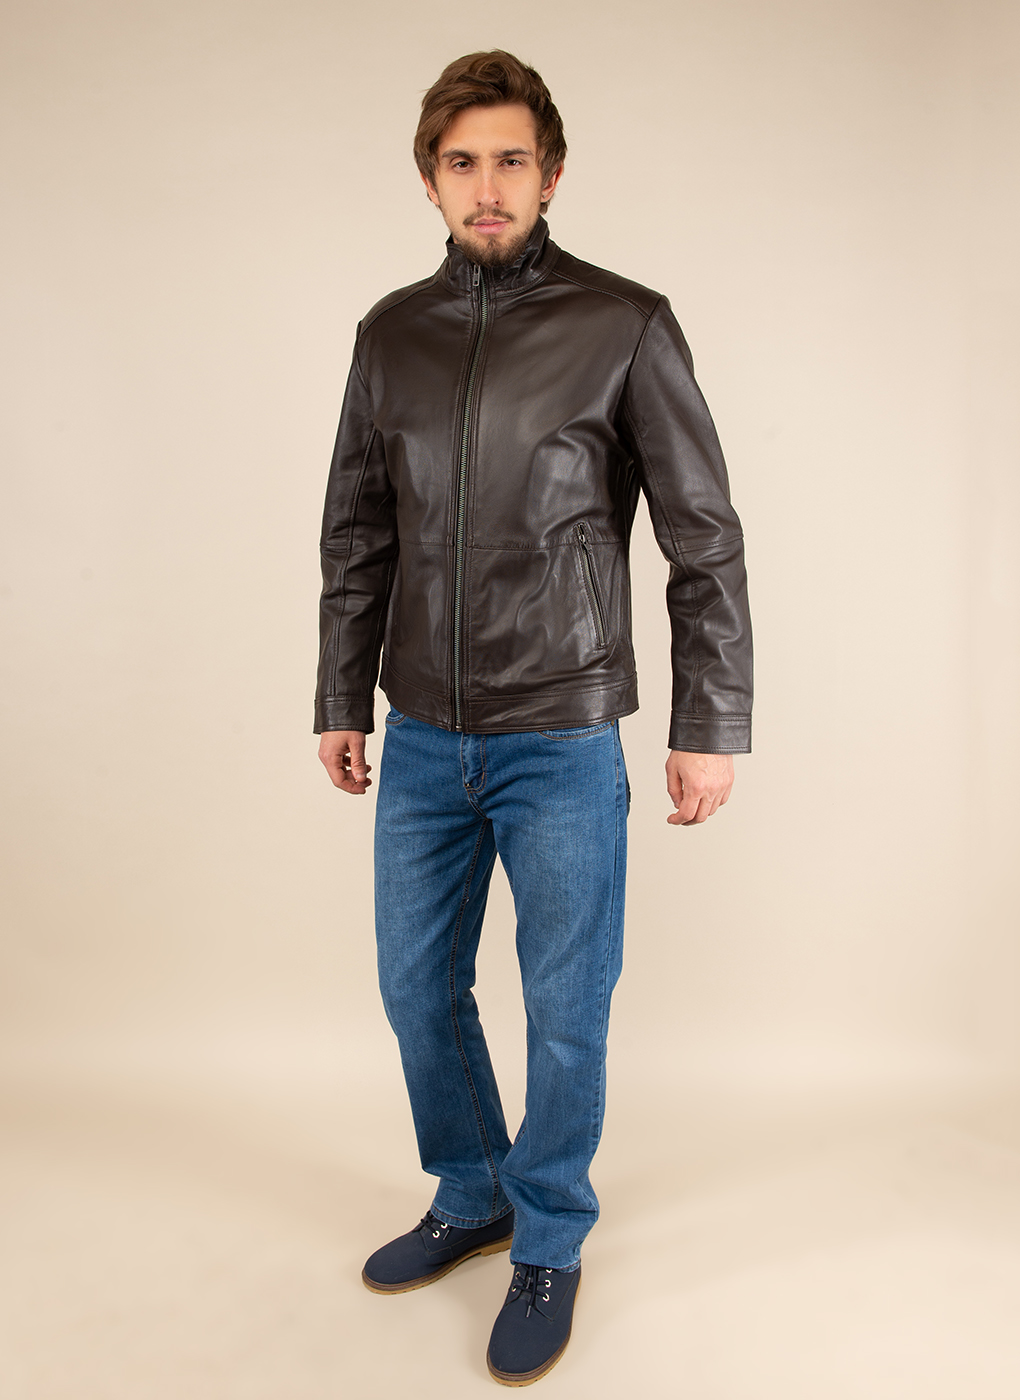 Кожаная куртка мужская Каляев 51795 коричневая 58 RU